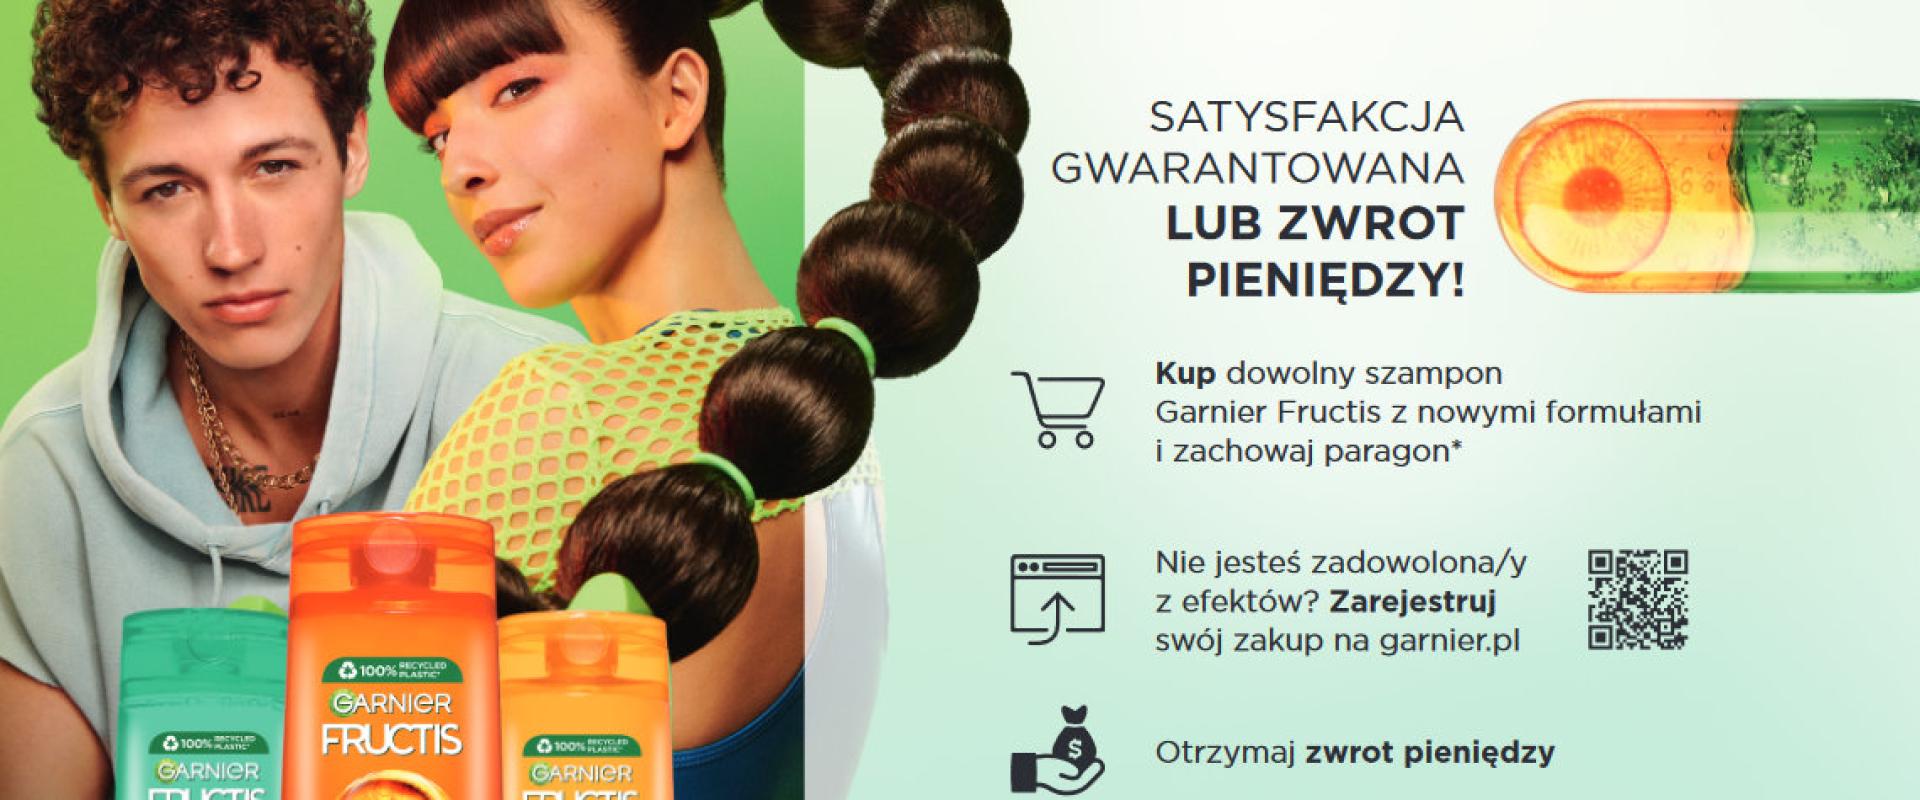 Garnier obala popularne mity dotyczące pielęgnacji włosów i deklaruje satysfakcję gwarantowaną albo zwrot pieniędzy